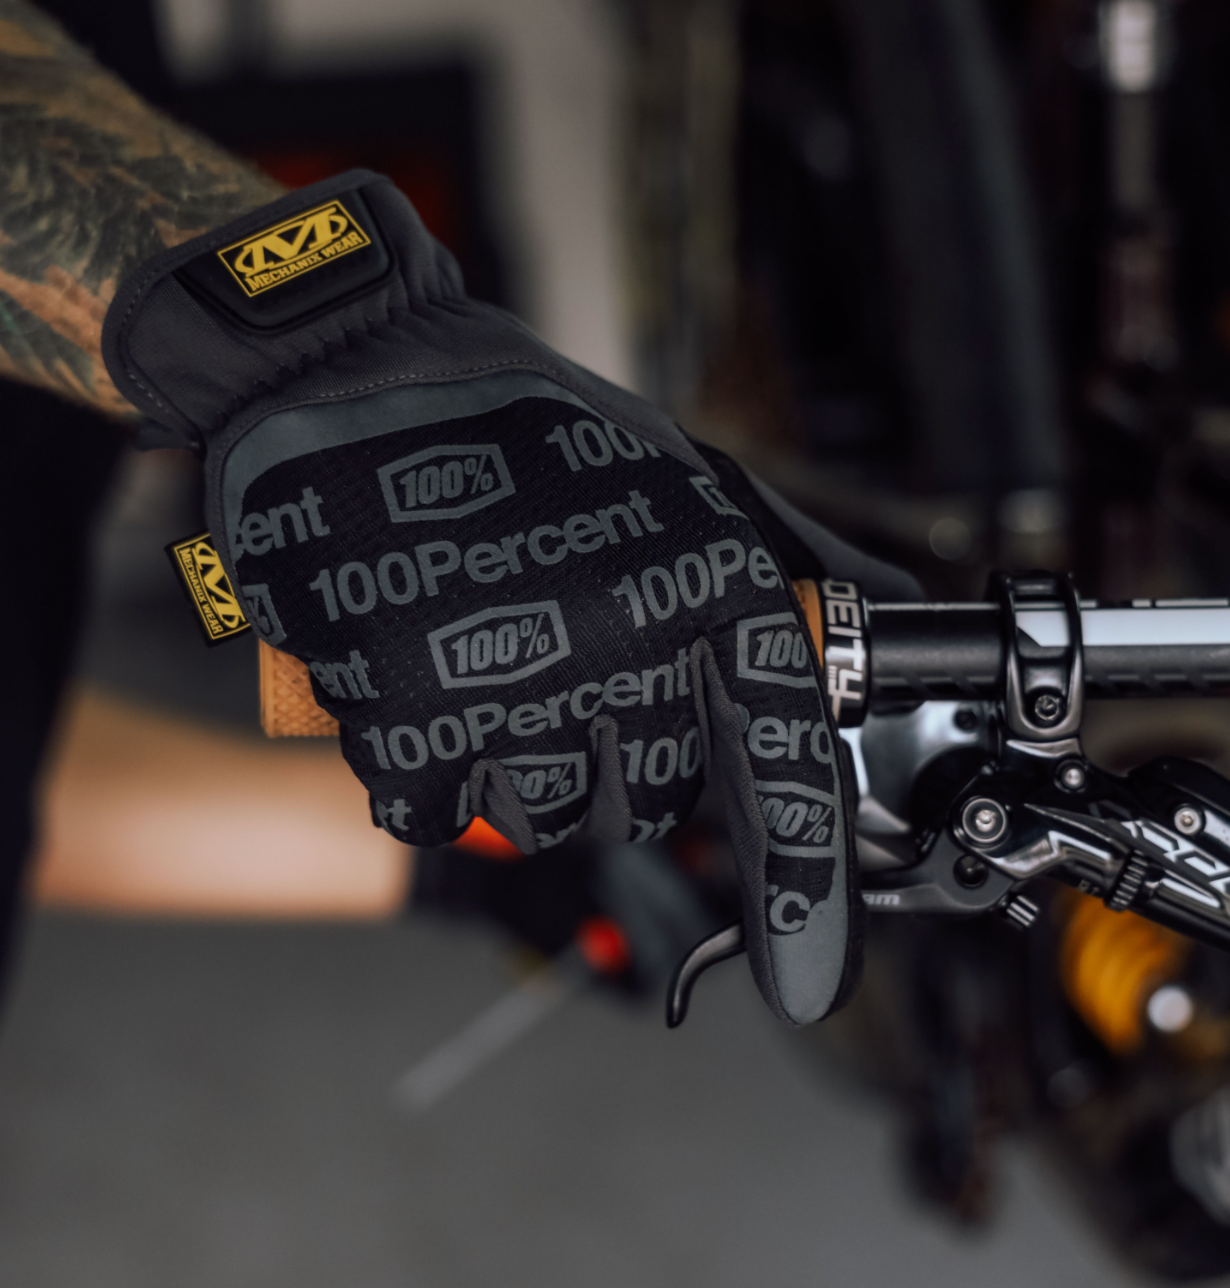 FastFit Black Gloves